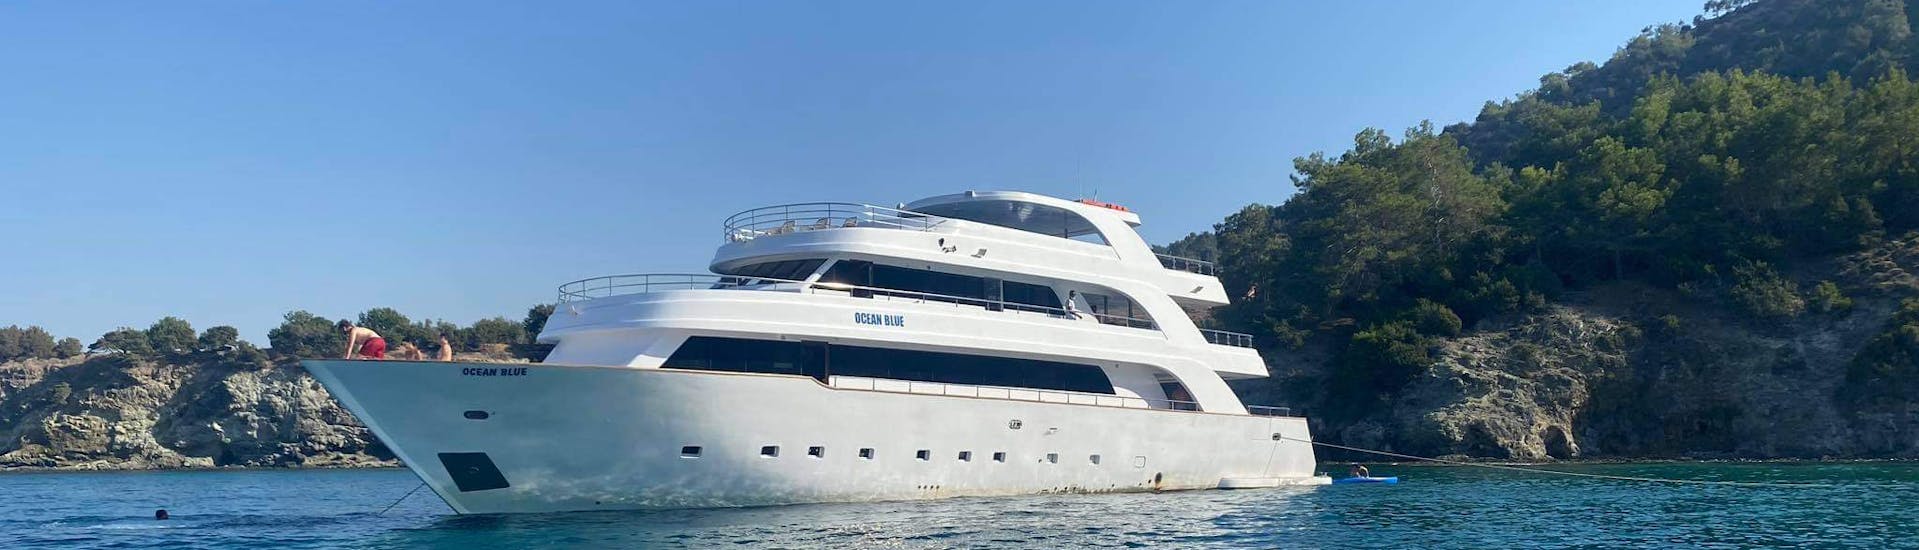 Luxuriöse Sonnenuntergangs-Yacht Tour zur Blauen Lagune von Latchi inklusive Transfer (Nur für Erwachsene).